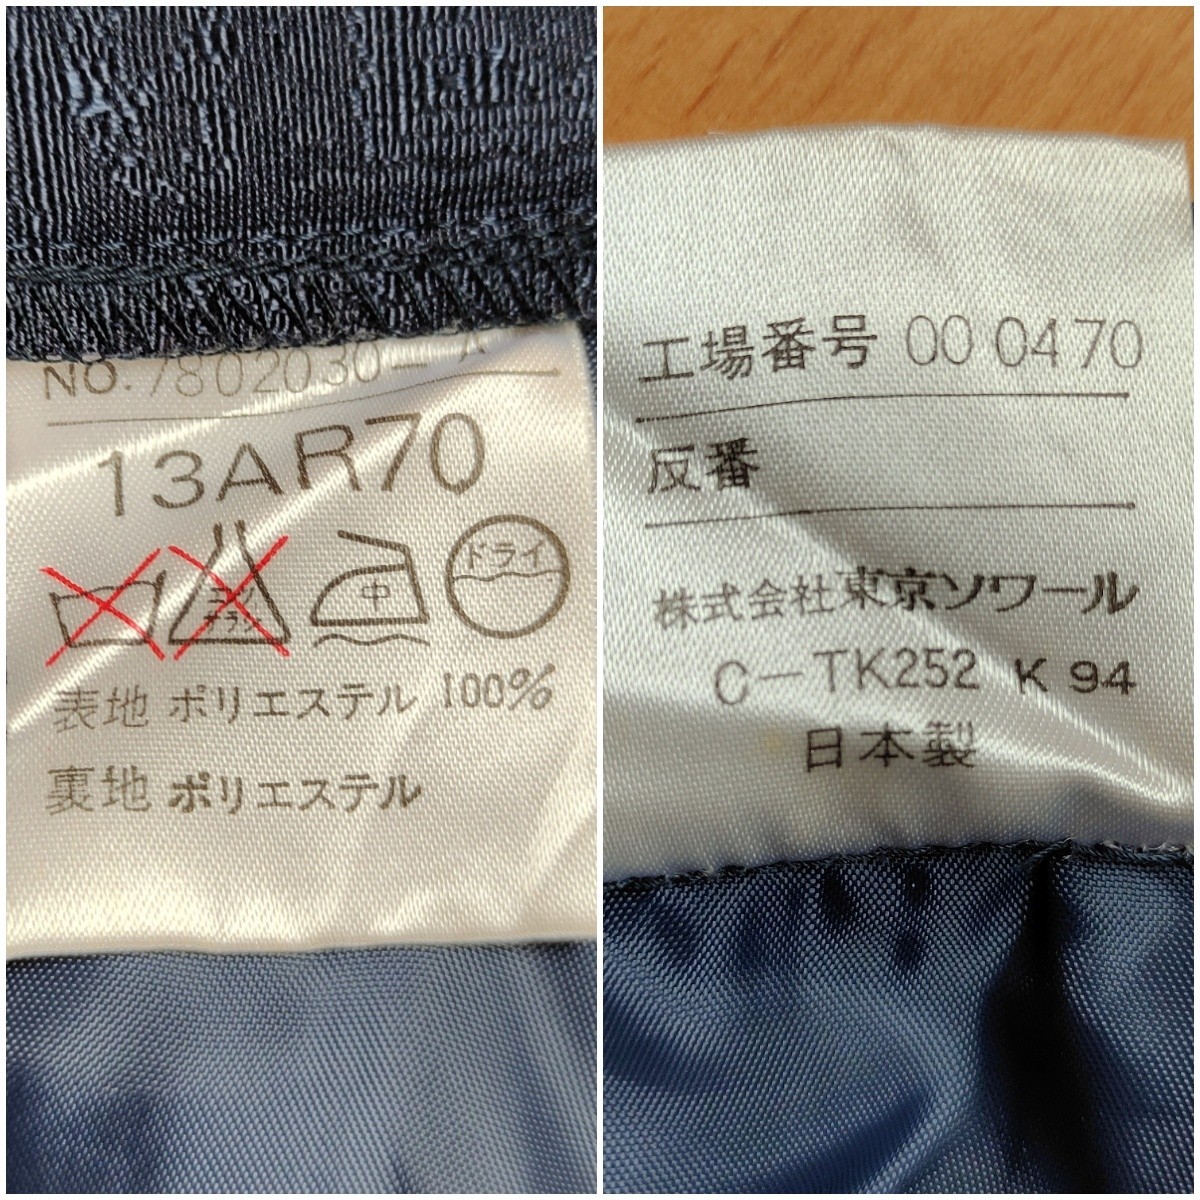 [ beautiful goods ]TOKYO SOIR Tokyo sowa-ru* shadow design knee height skirt 13 number dark navy made in Japan pcs shape Japan NAVY shadow